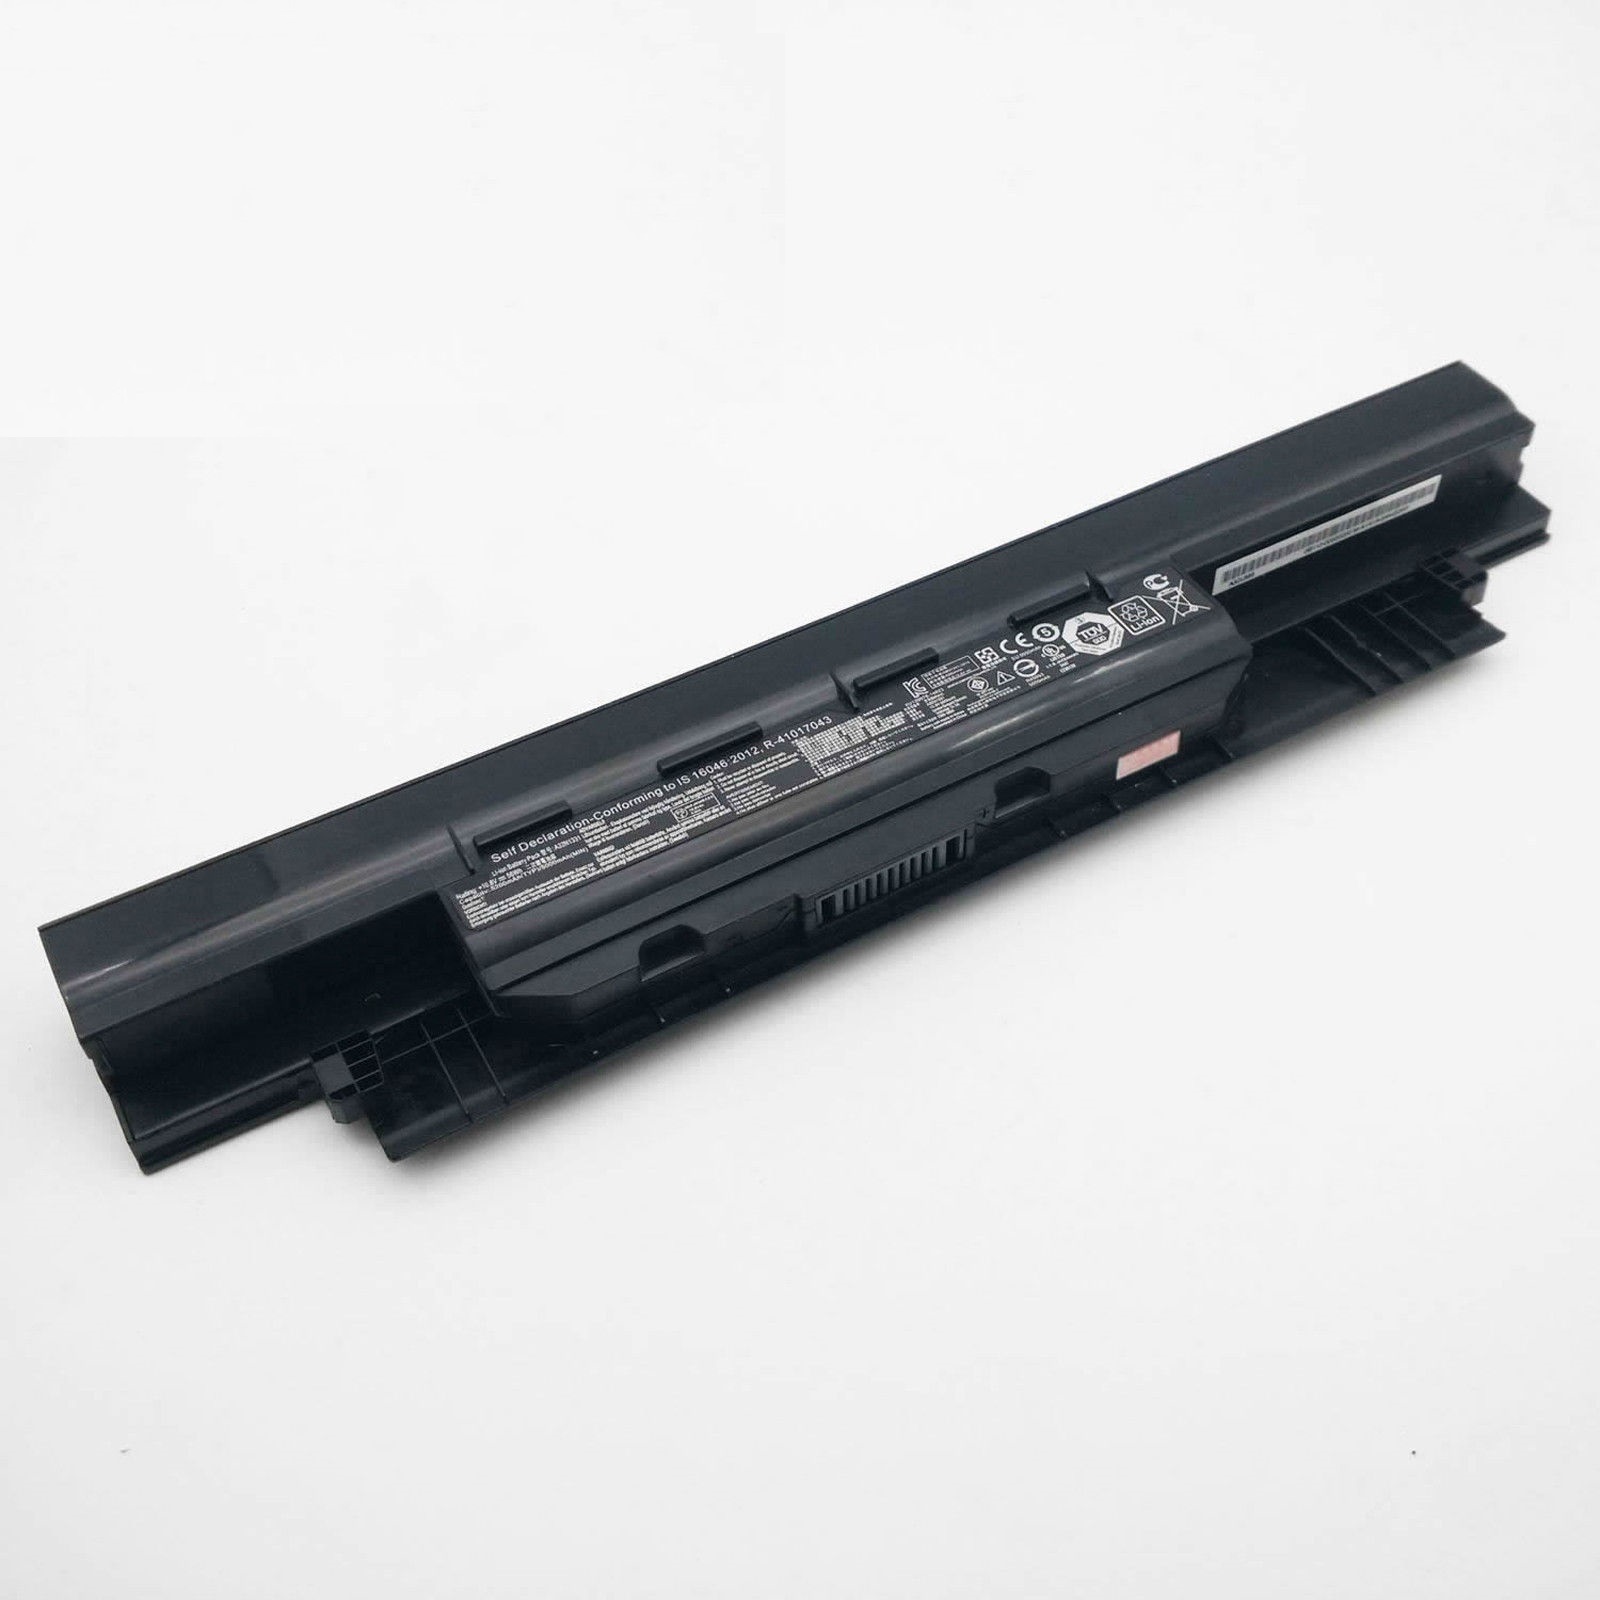 ASUS 450 E451 E551 PU450 PU451 PU550 PU551 PRO450 compatible battery